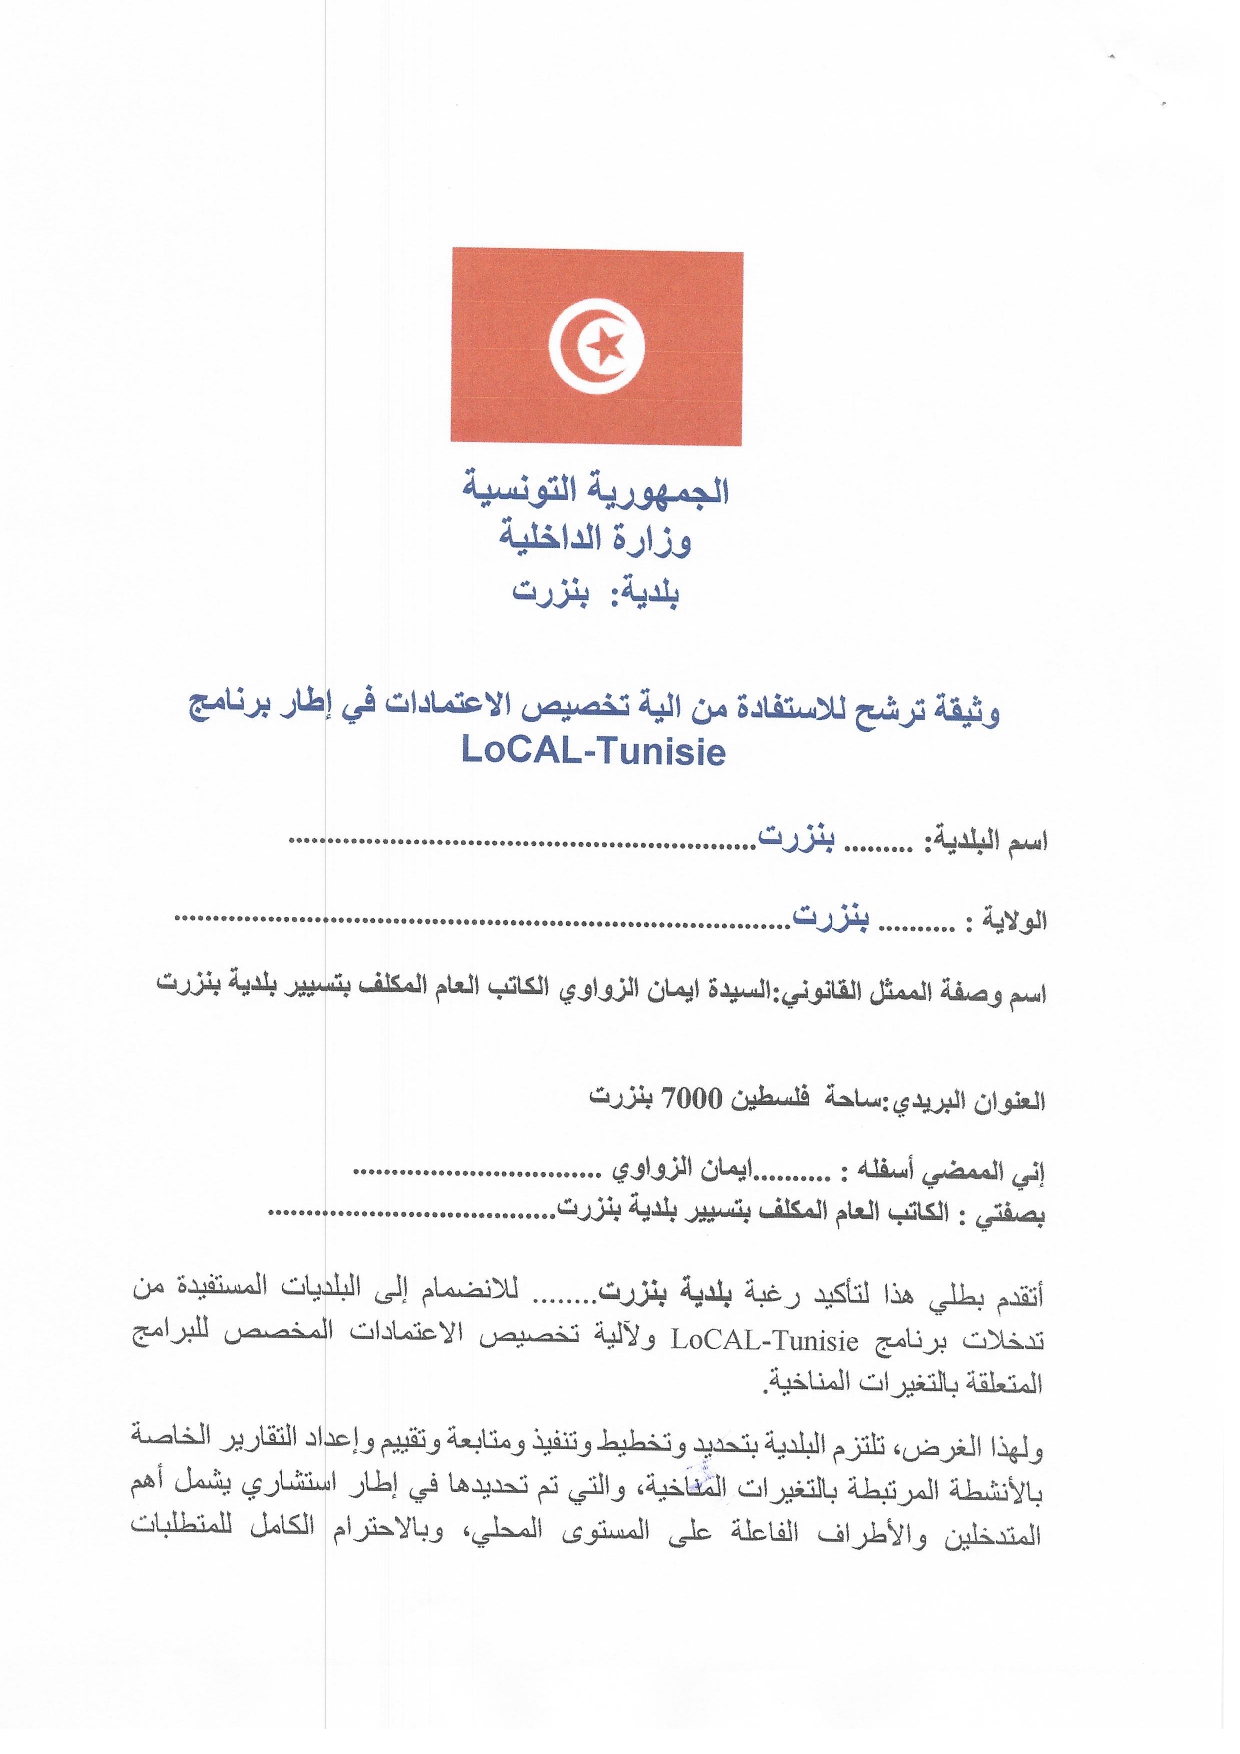 مطلب ترشح لبرنامج محلي -تونسLocal-Tunisie‎